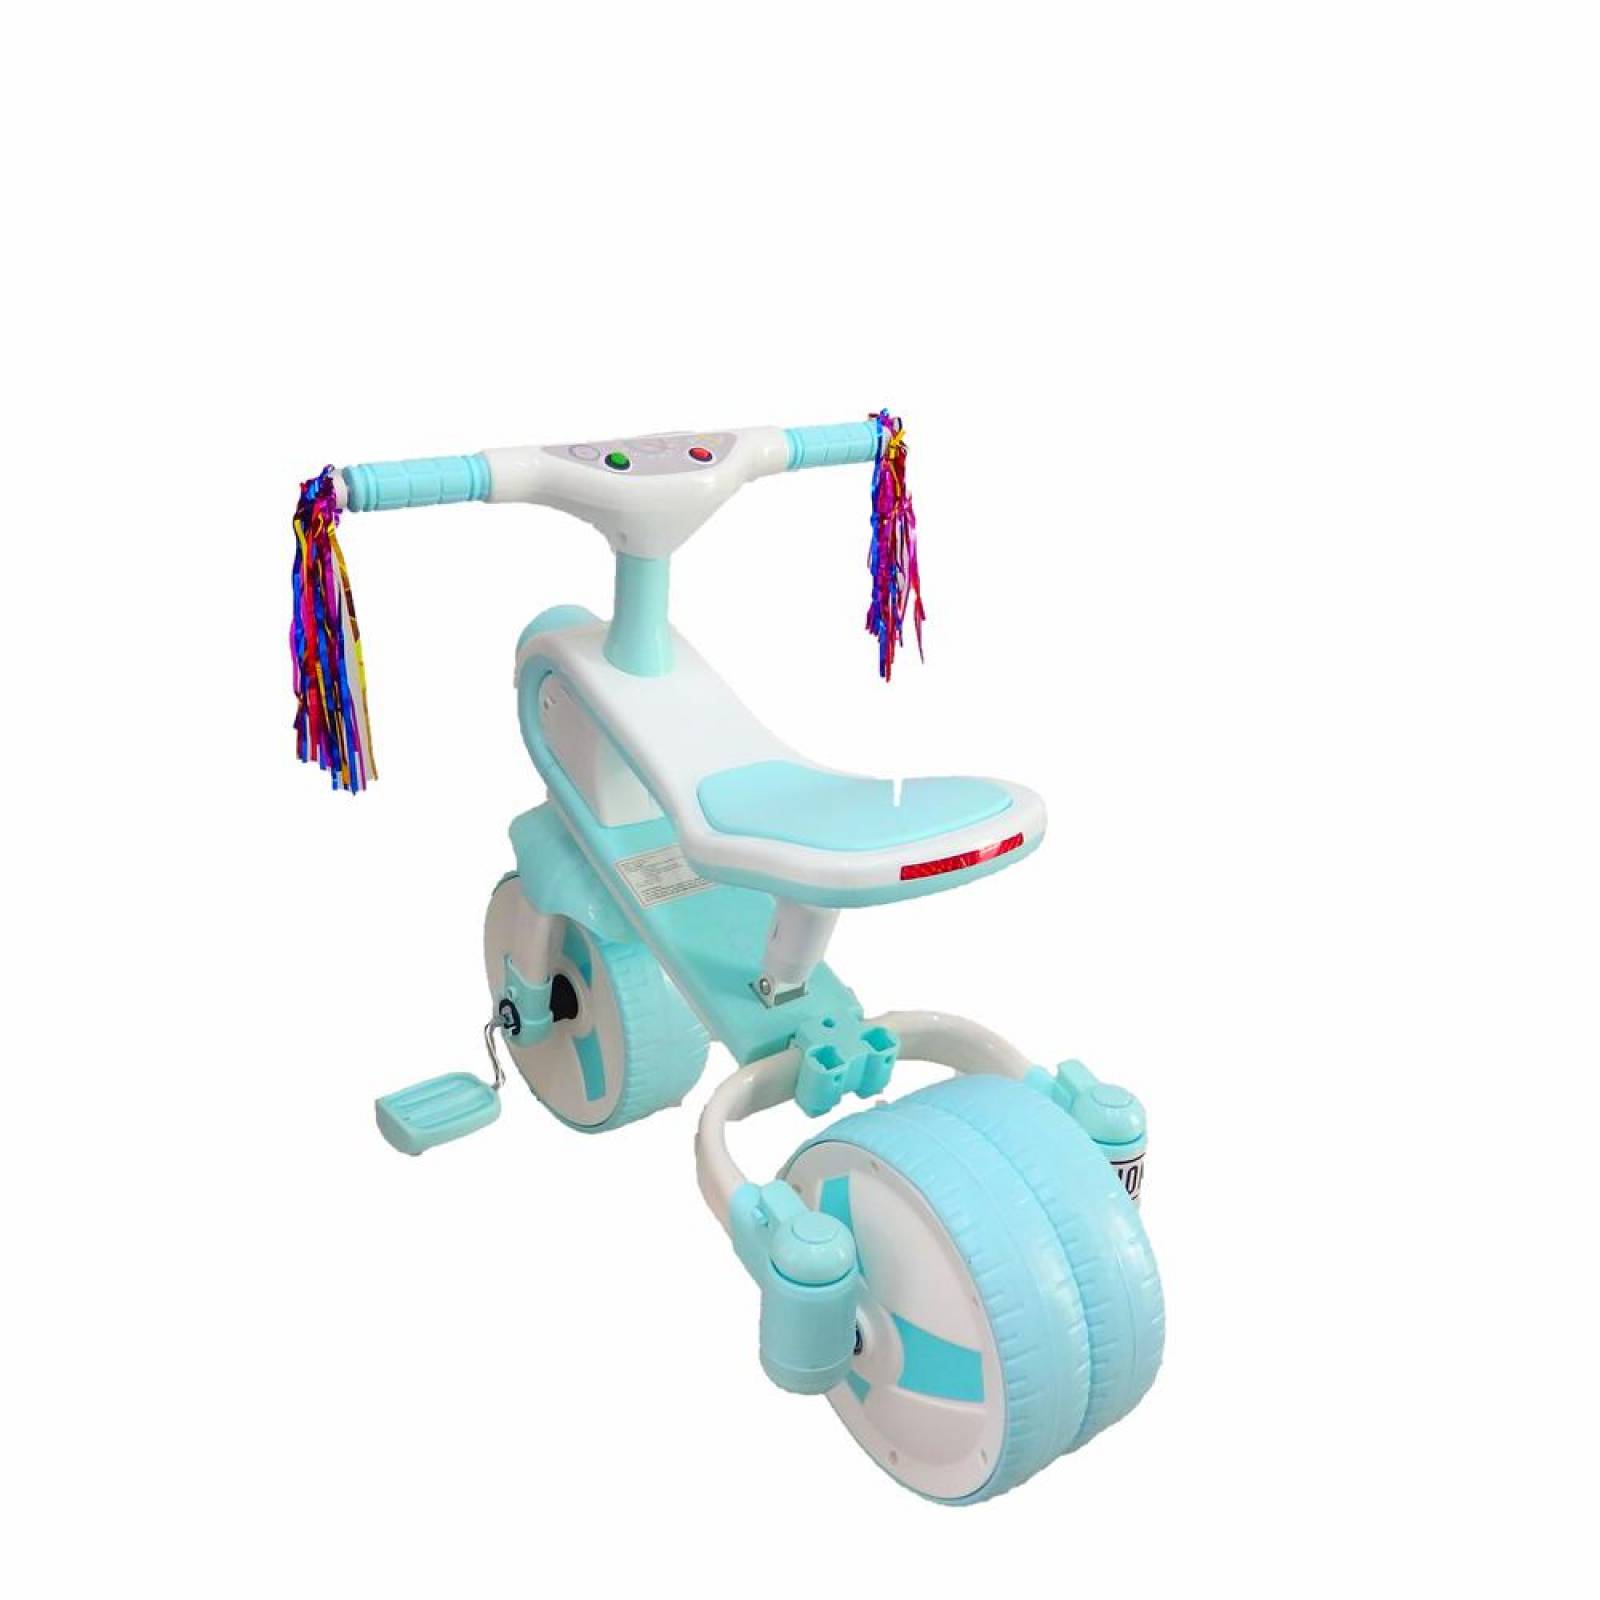 Triciclo Bicicleta y correpasillos 3 en 1 hasta de 6 años Azul Azul cielo